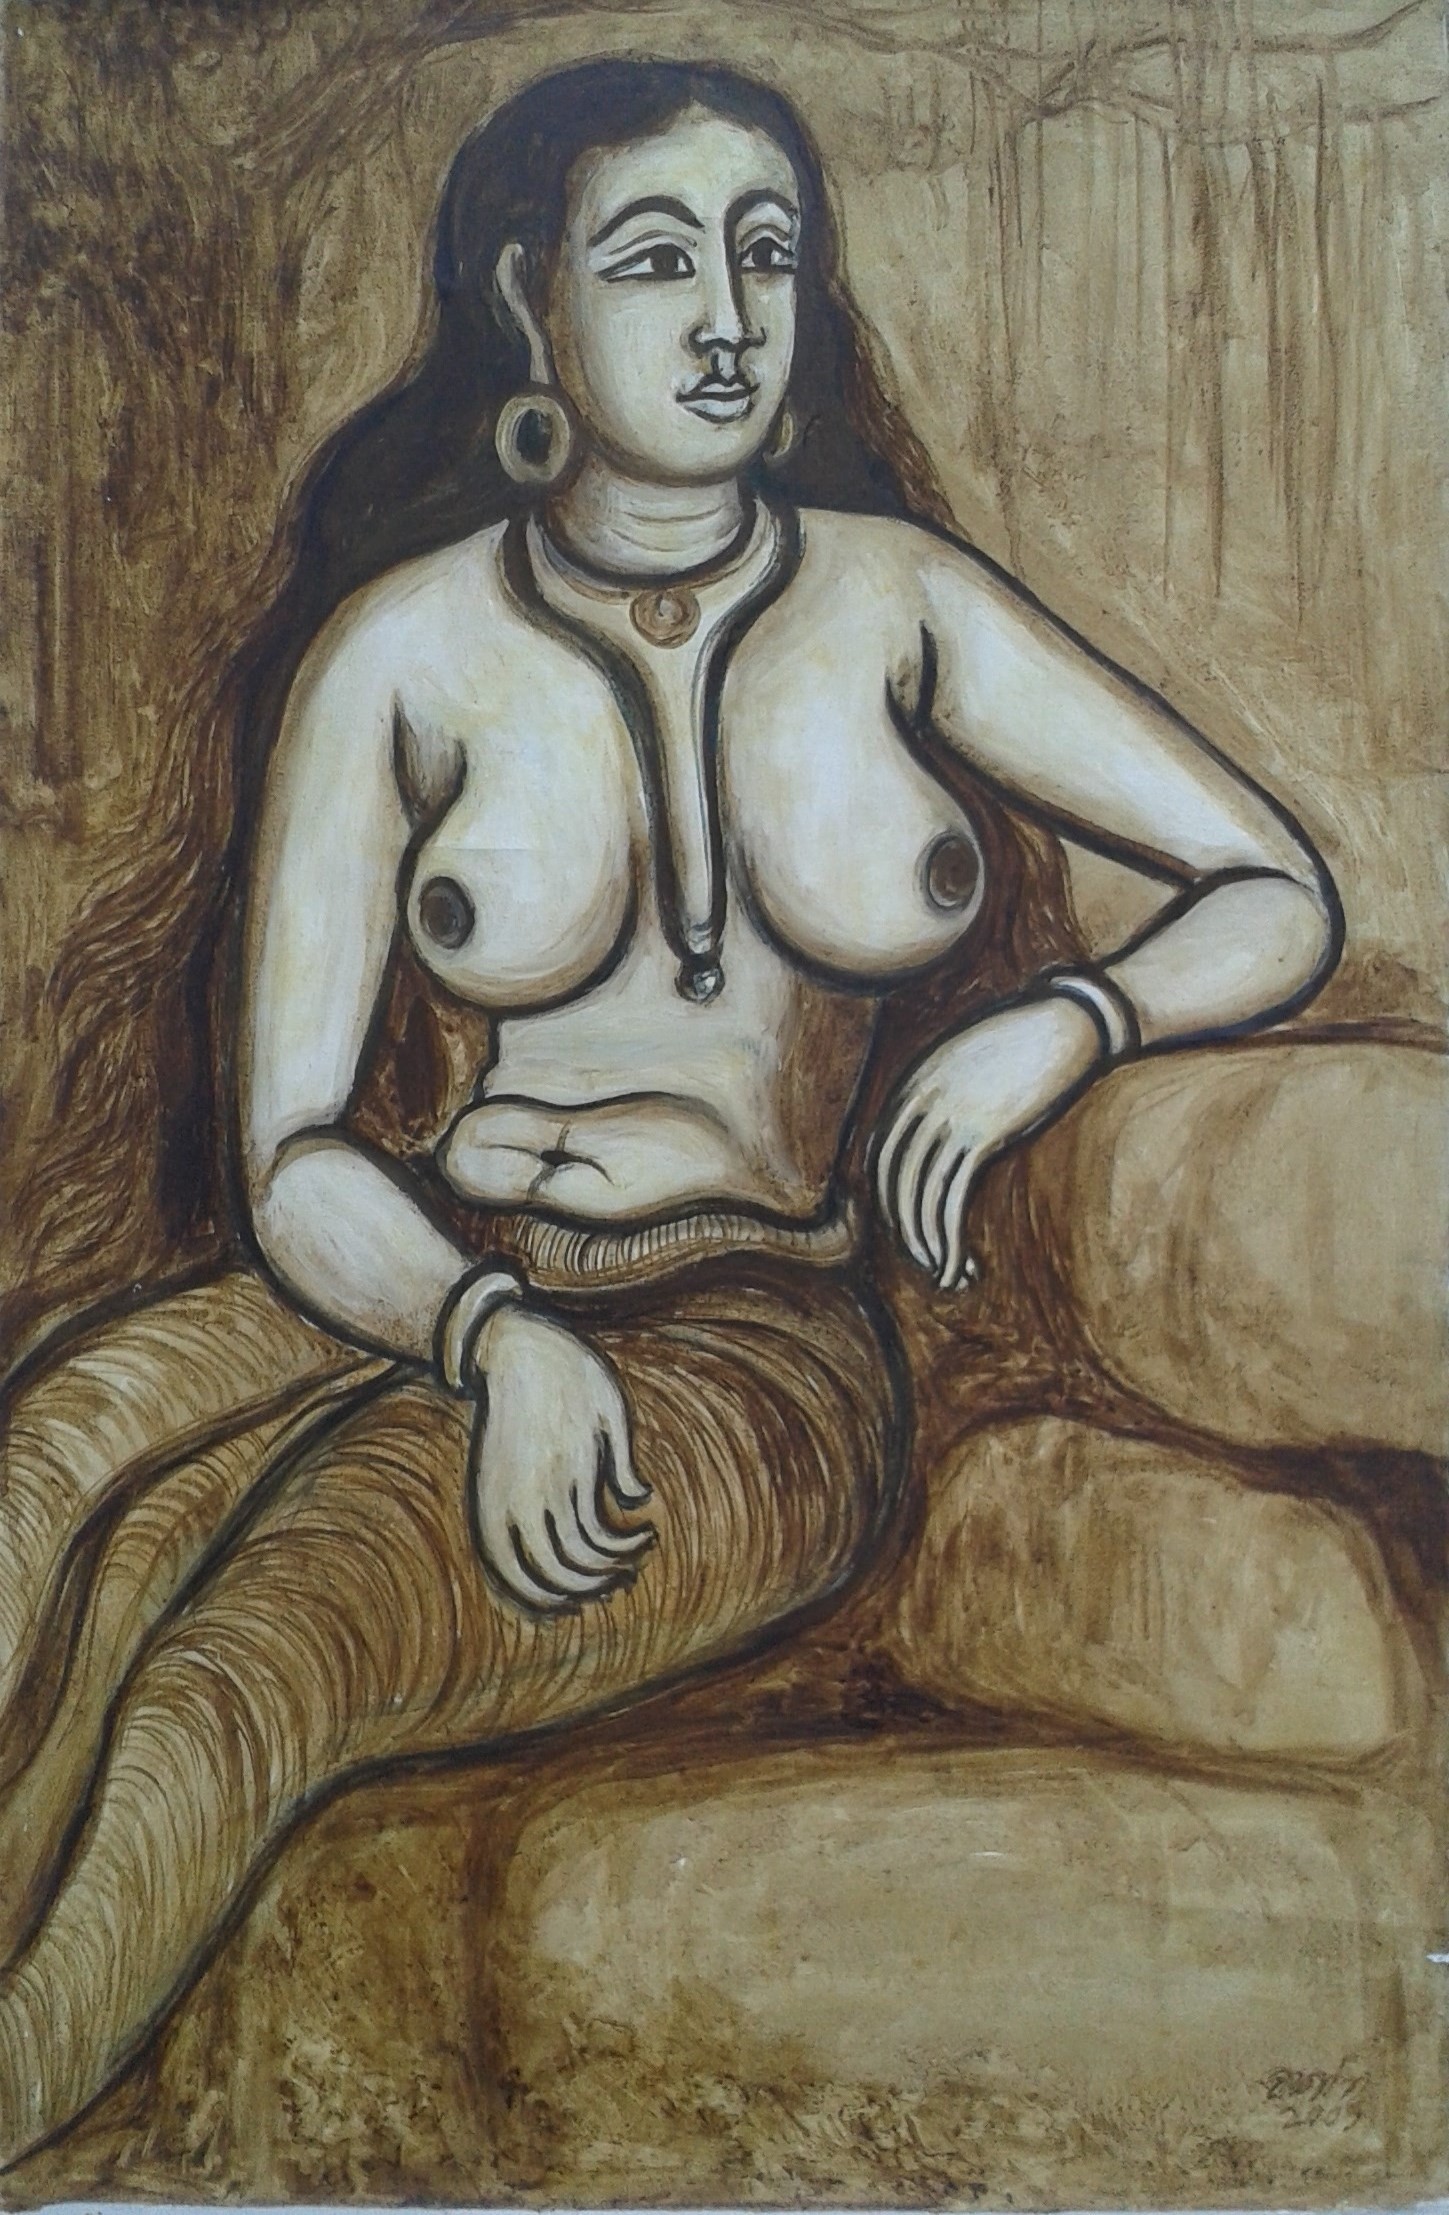 She by Wasantha Namaskara